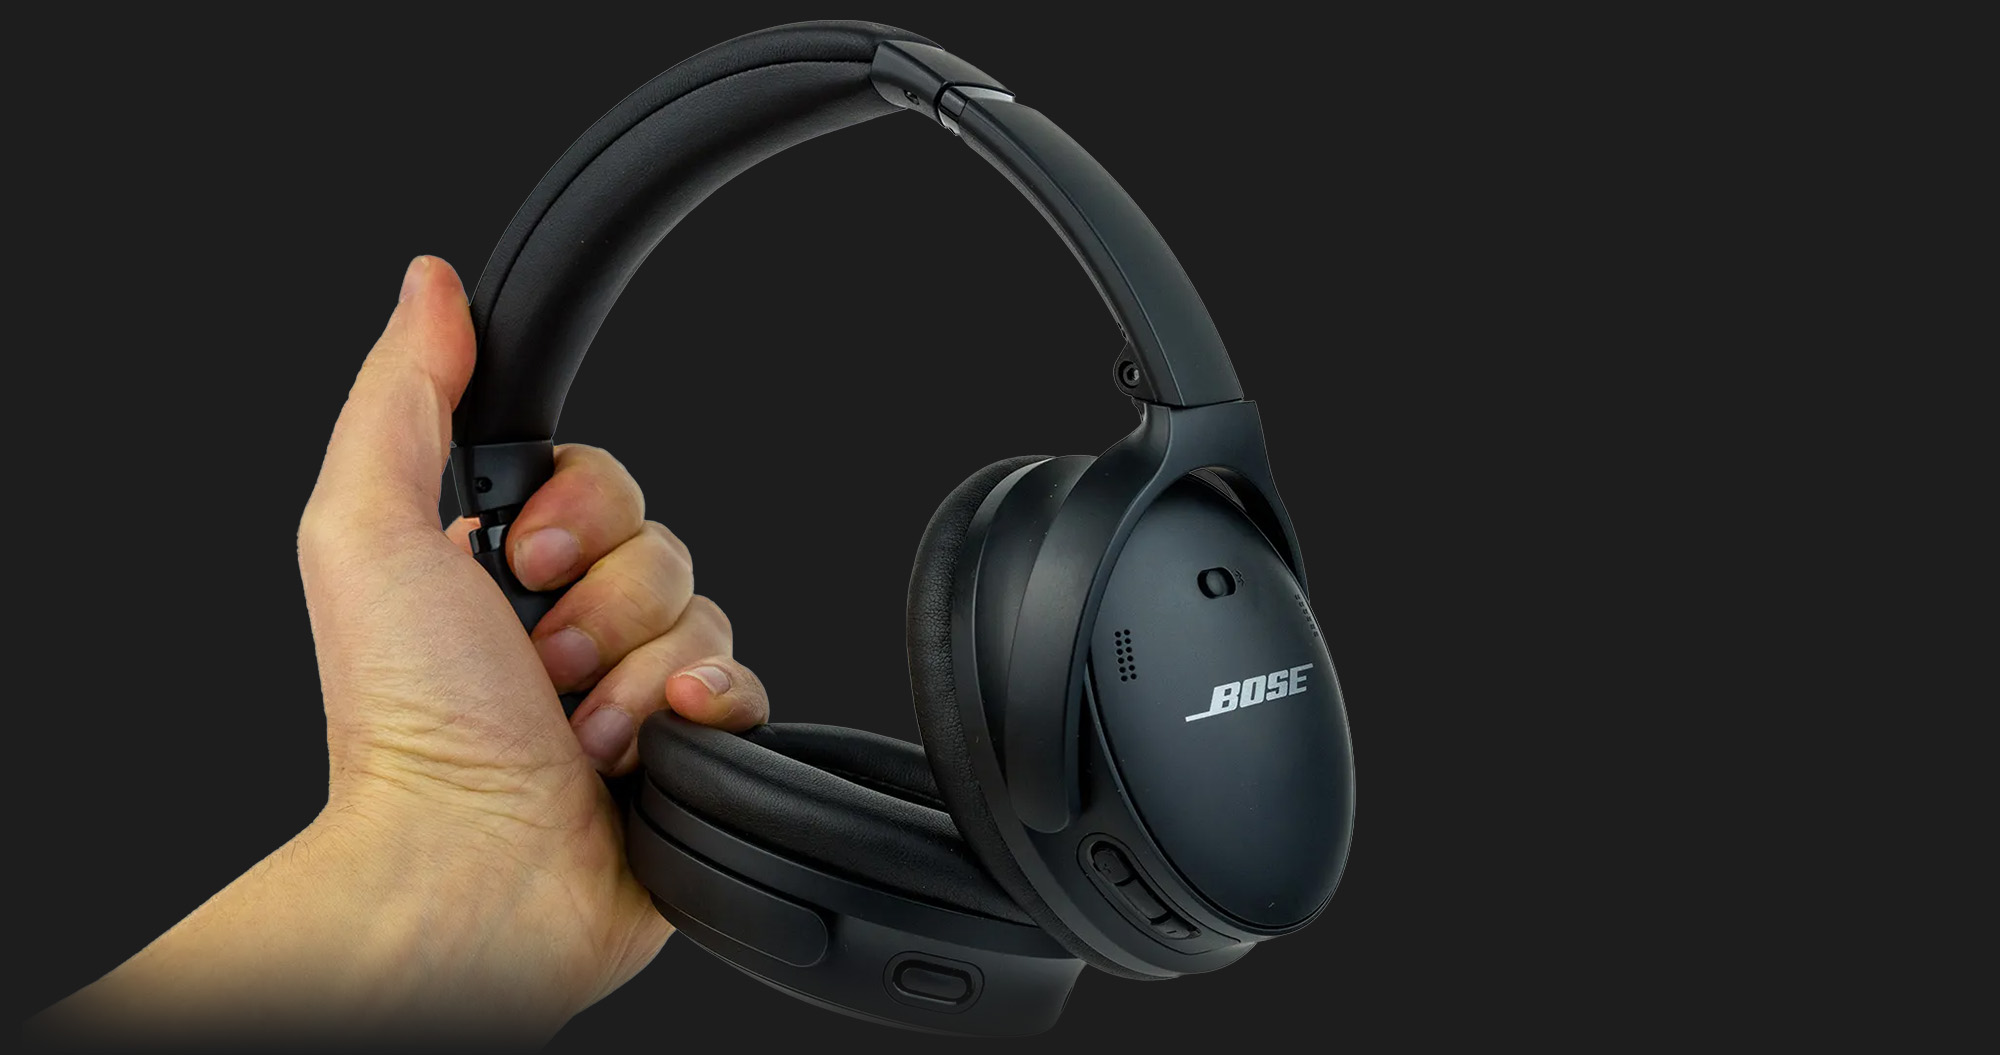 Навушники Bose QuietComfort Headphones (Smoke White)